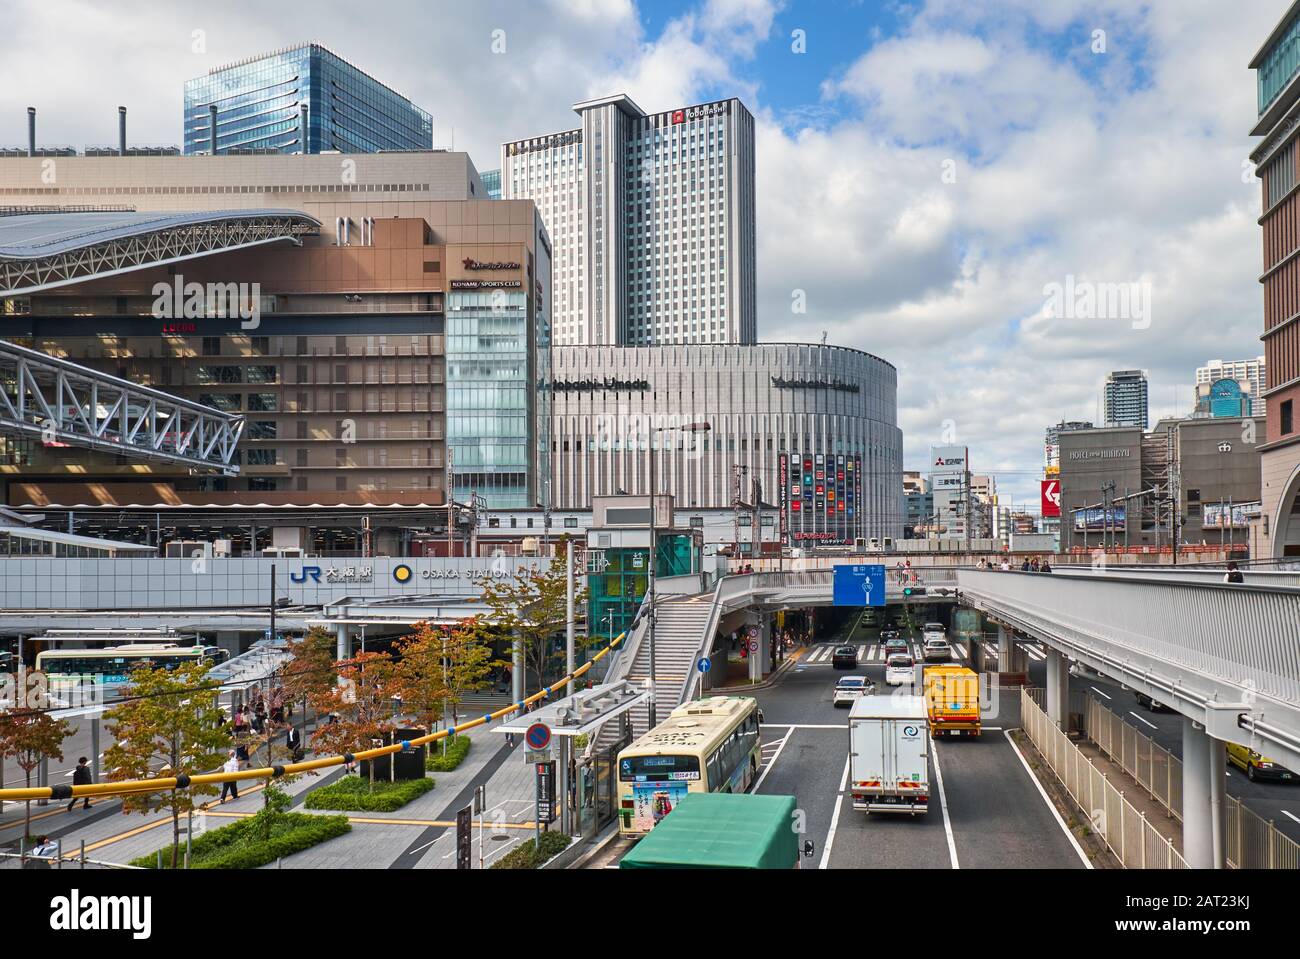 OSAKA, Japan - 15 Oktober, 2019: Die modernen Hochhäuser und Kreuzungen im urbanen Zentrum der Osaka Station, die Neue umeda C Stockfoto